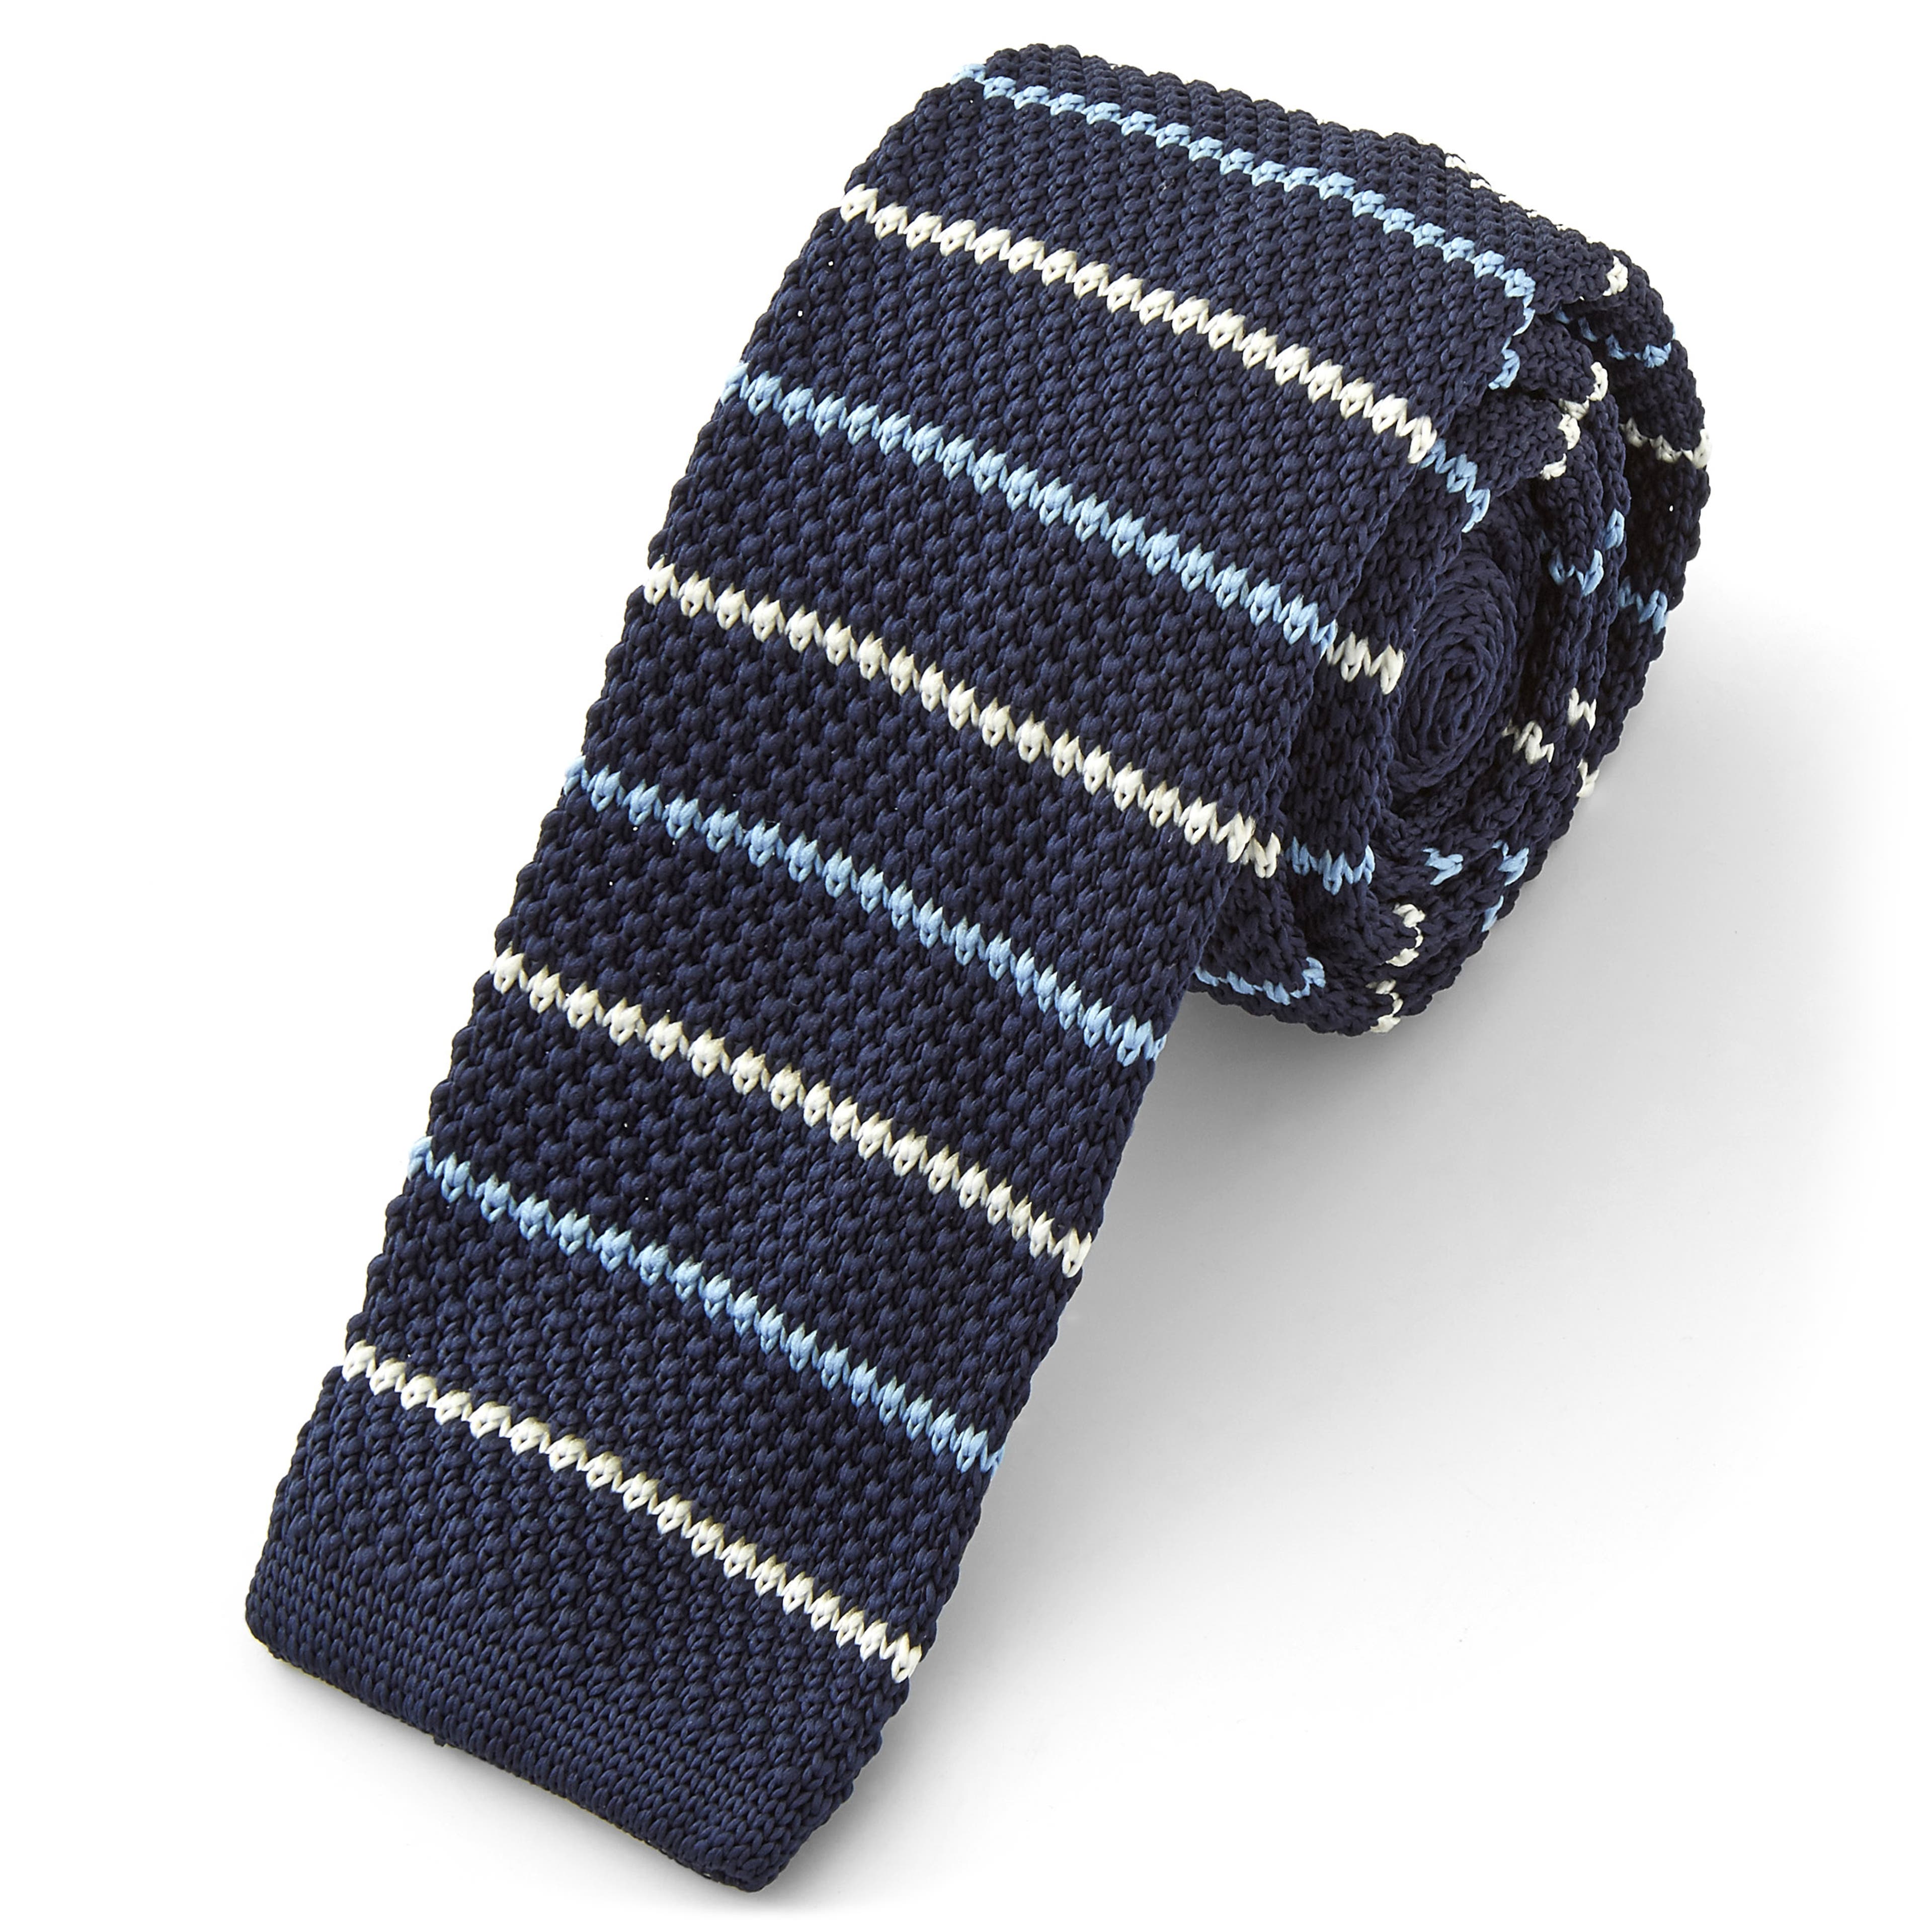 Cravatta a righe blu navy lavorata a maglia